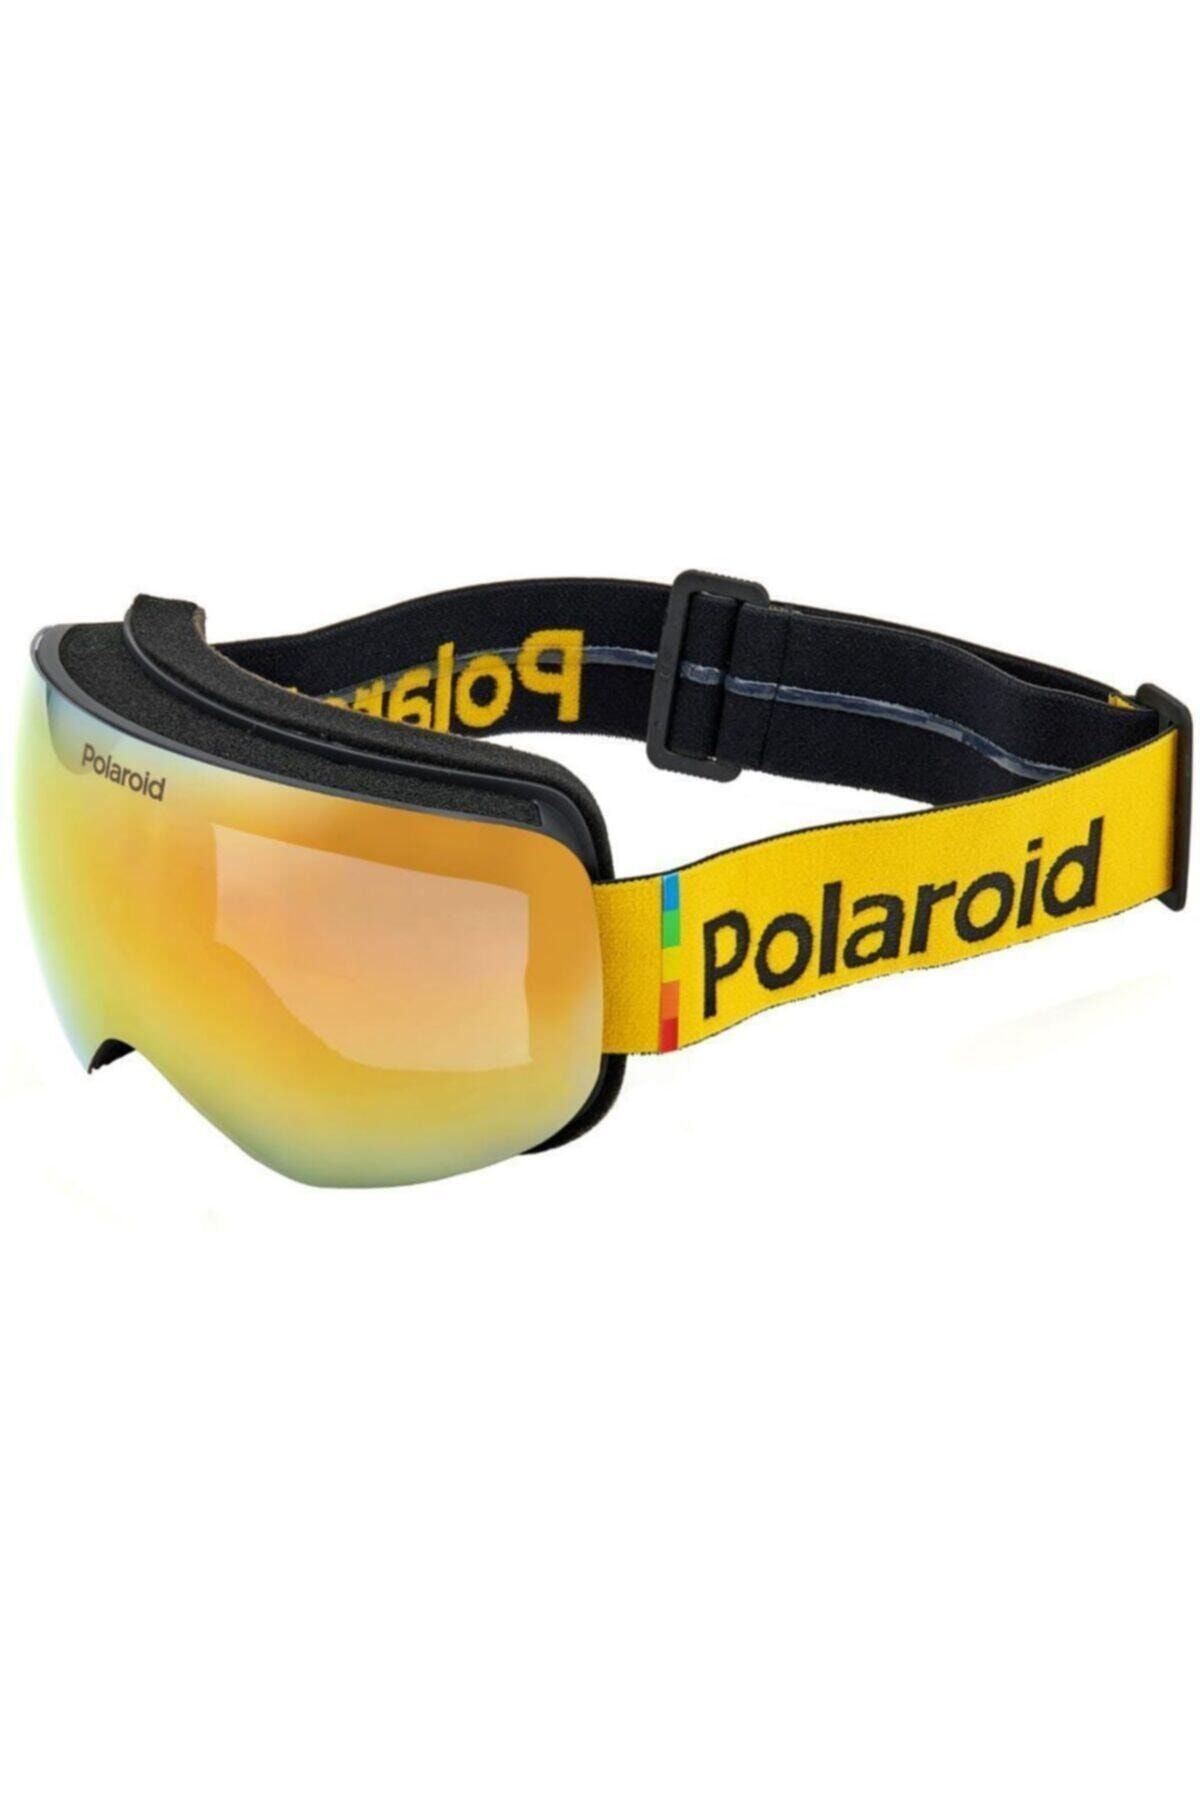 Polaroid Mask 01 9ks A2 Polarize Kayak Gözlüğü